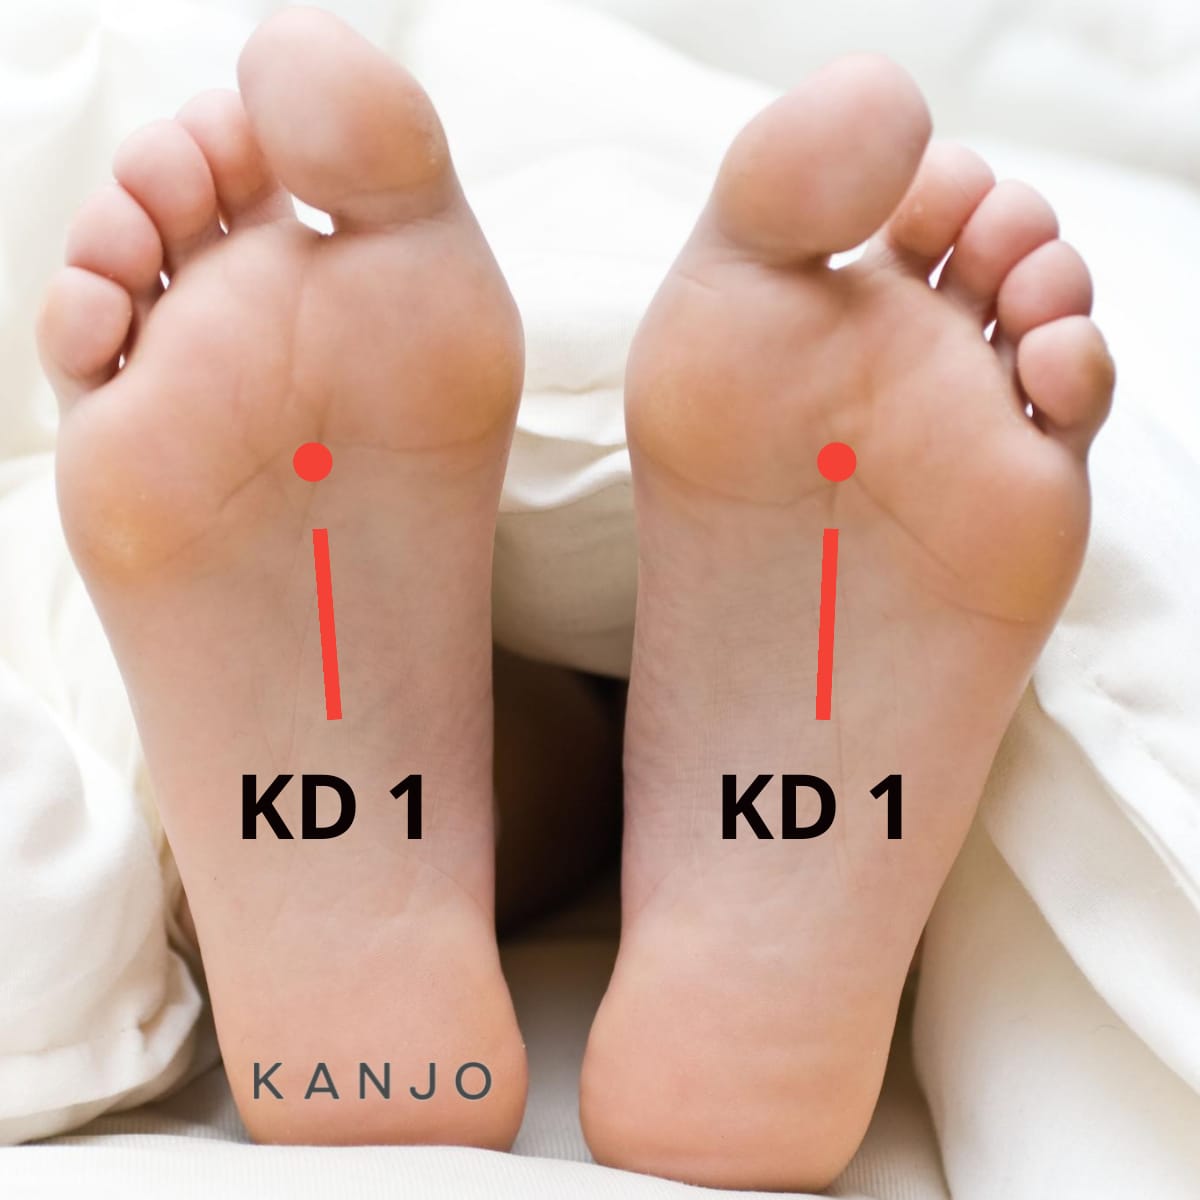 Kidney 1 (KD 1)